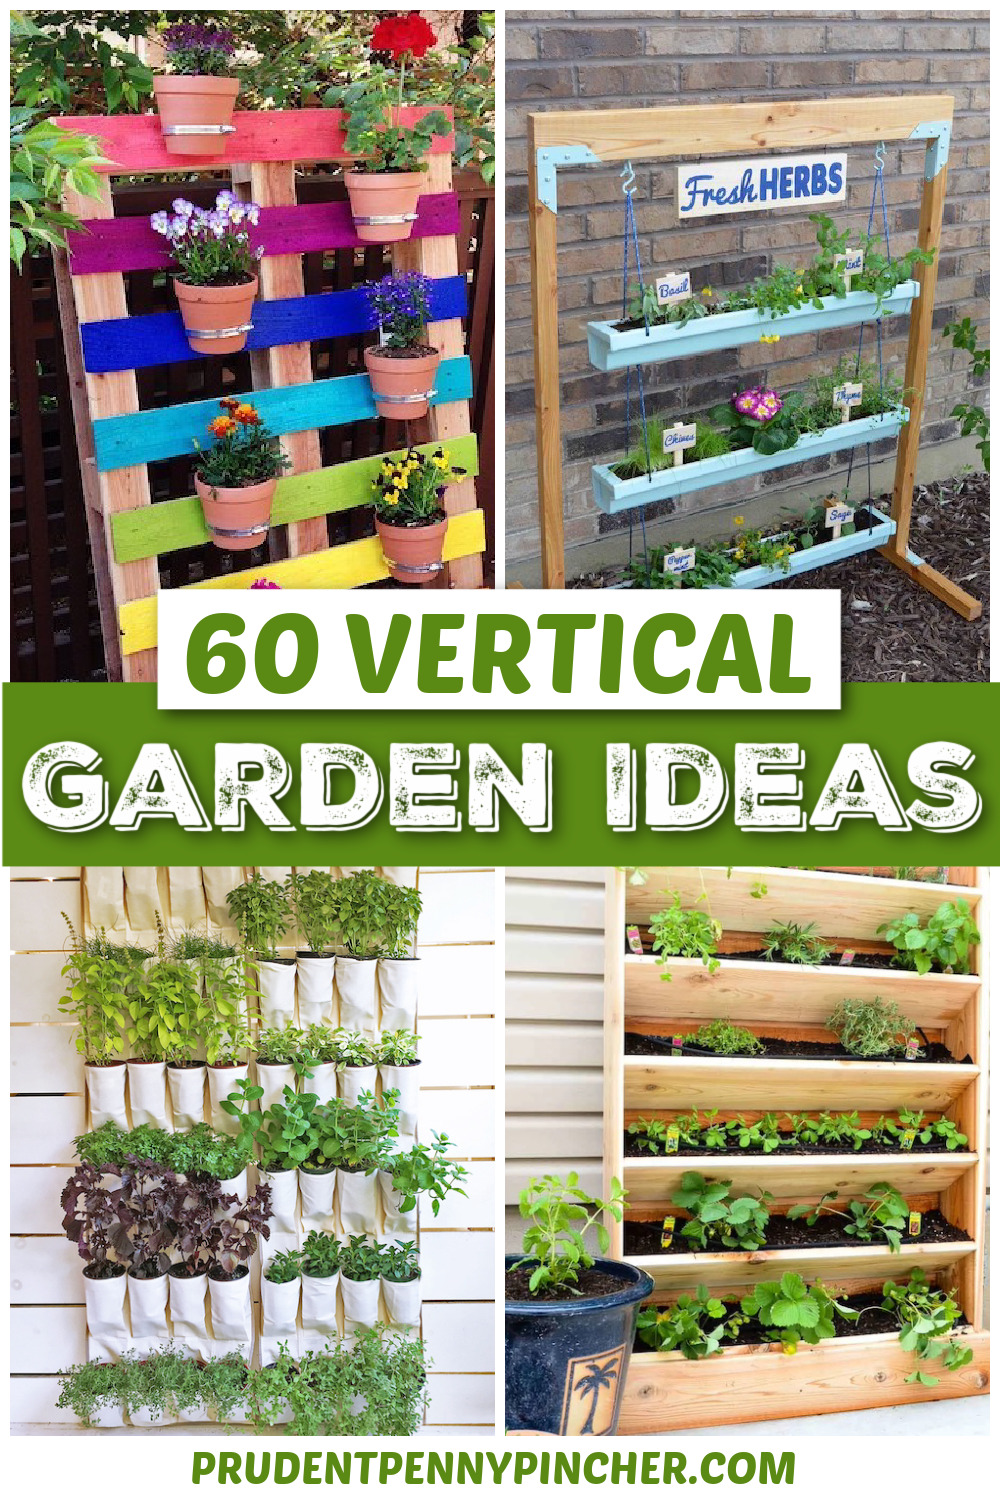 https://www.prudentpennypincher.com/wp-content/uploads/2021/03/VERTICAL-garden-ideas.jpg